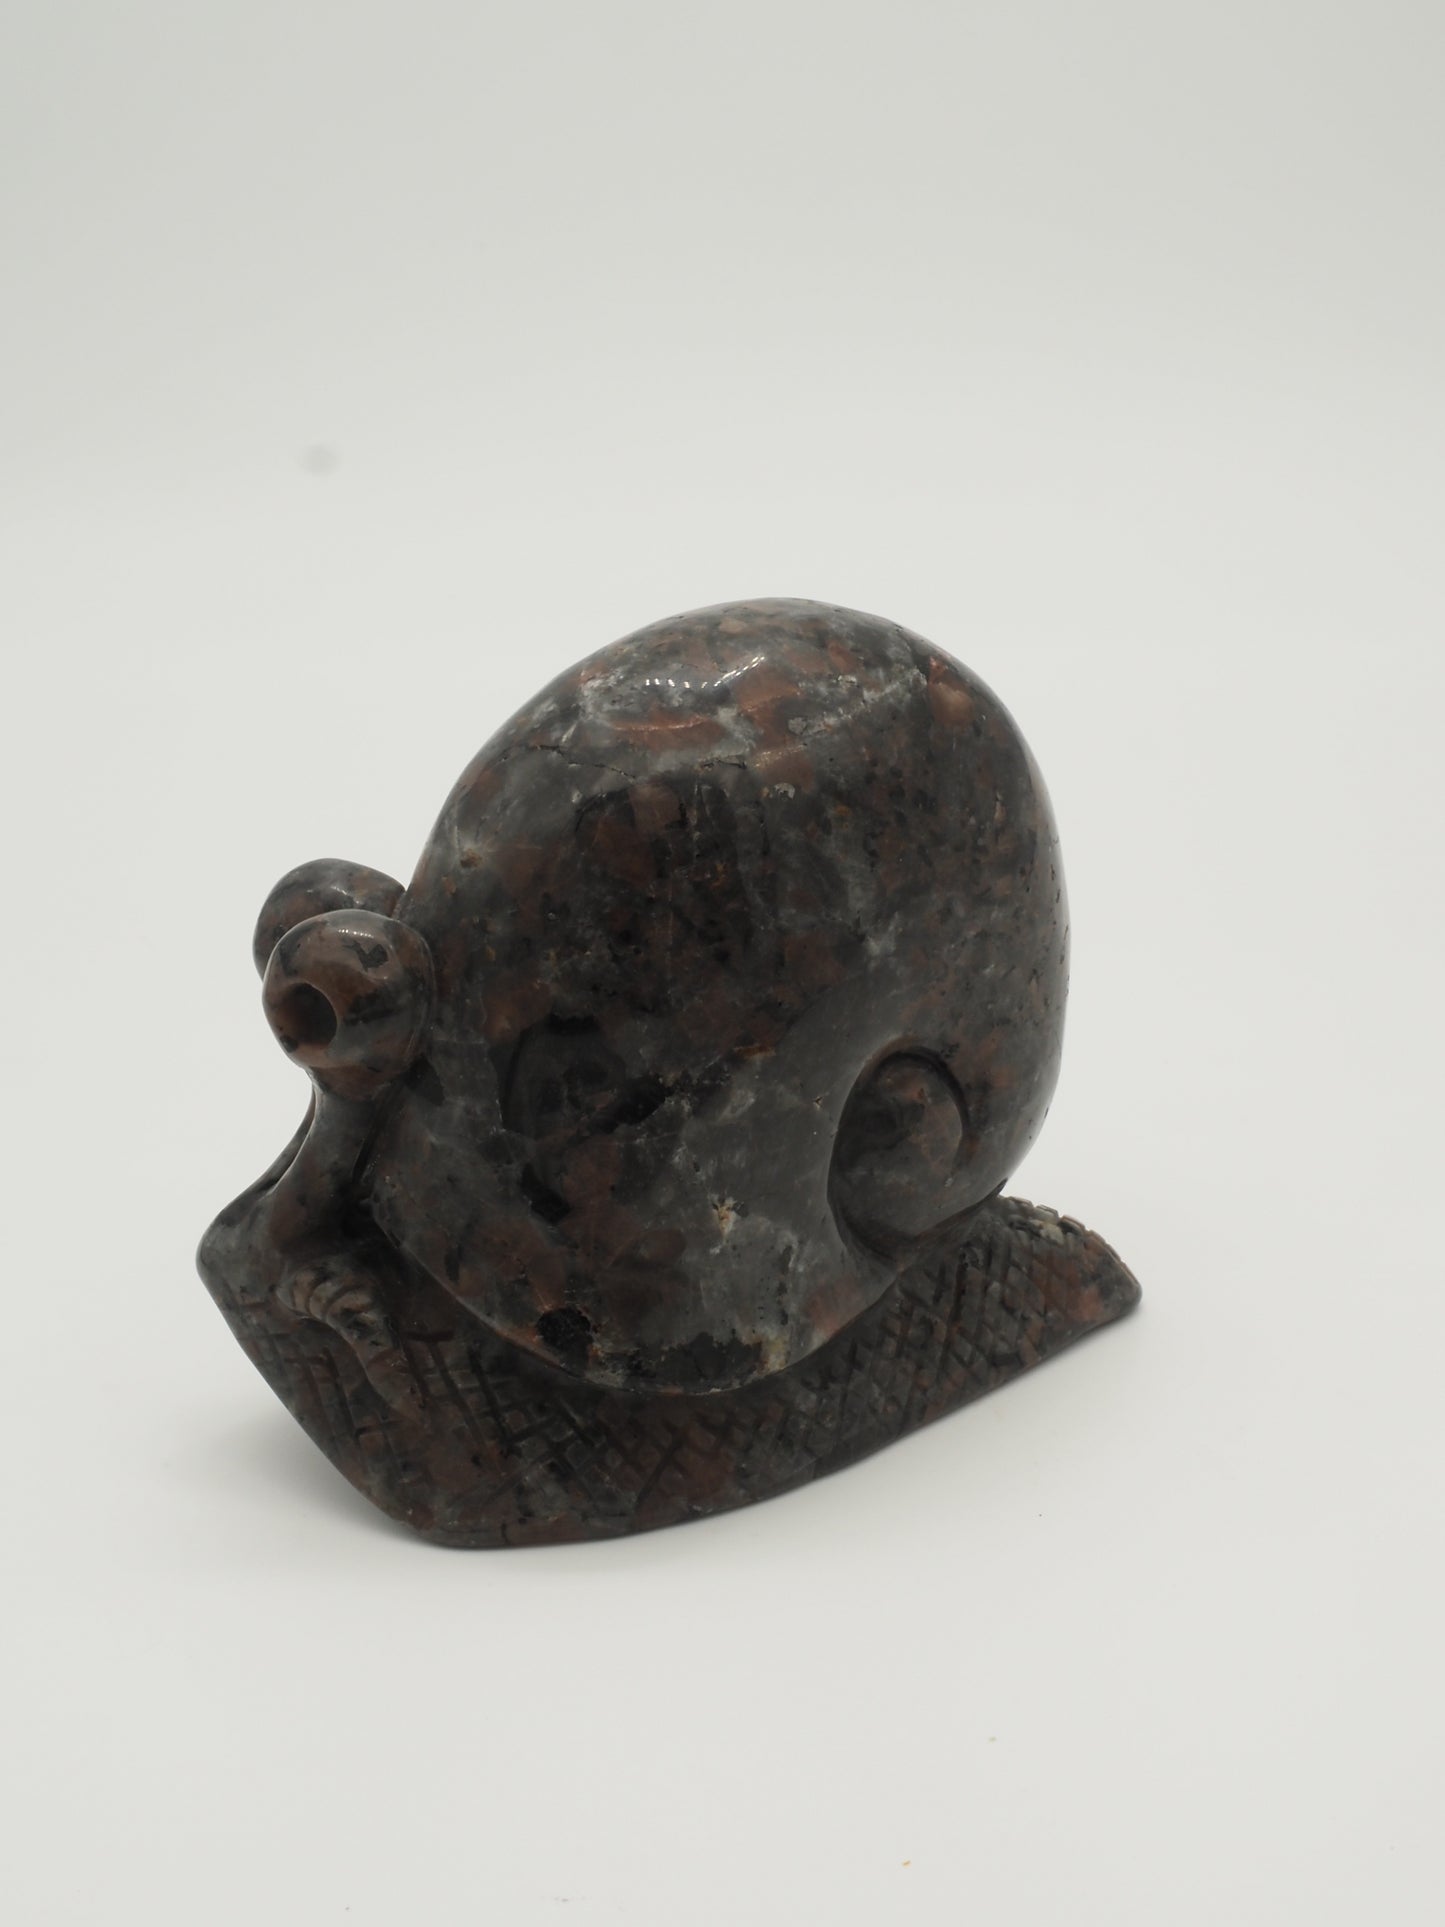 Yooperlite (Emberlite) Snail Carving